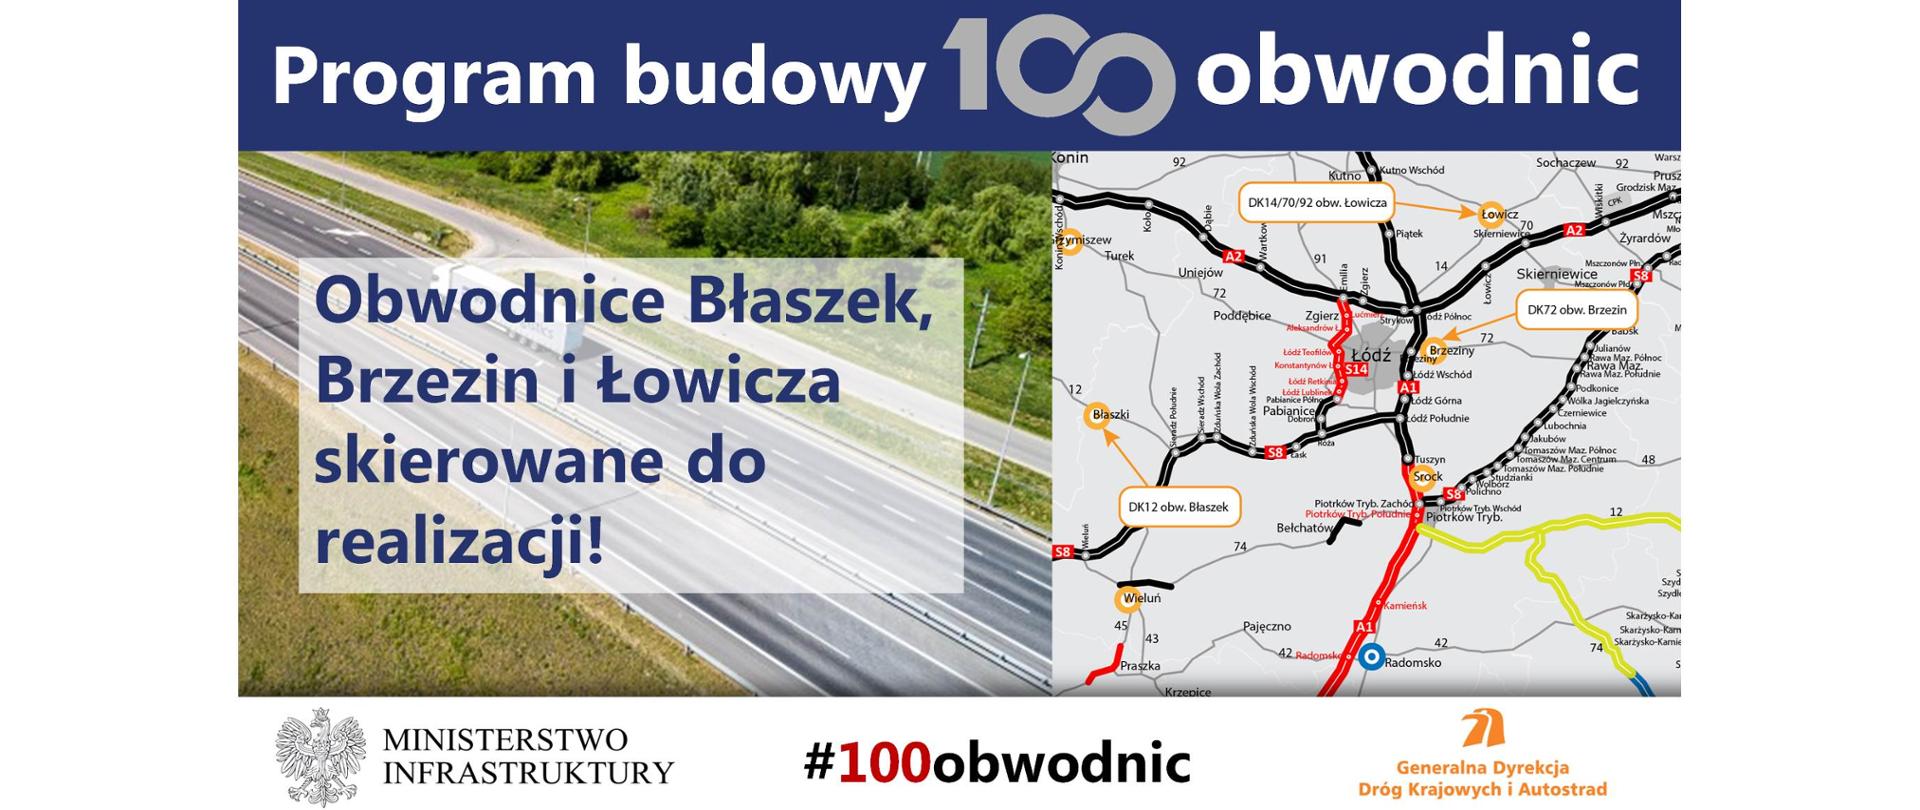 Obwodnice Błaszek, Brzezin i Łowicza zostaną zrealizowane w ramach Programu budowy 100 obwodnic - infografika